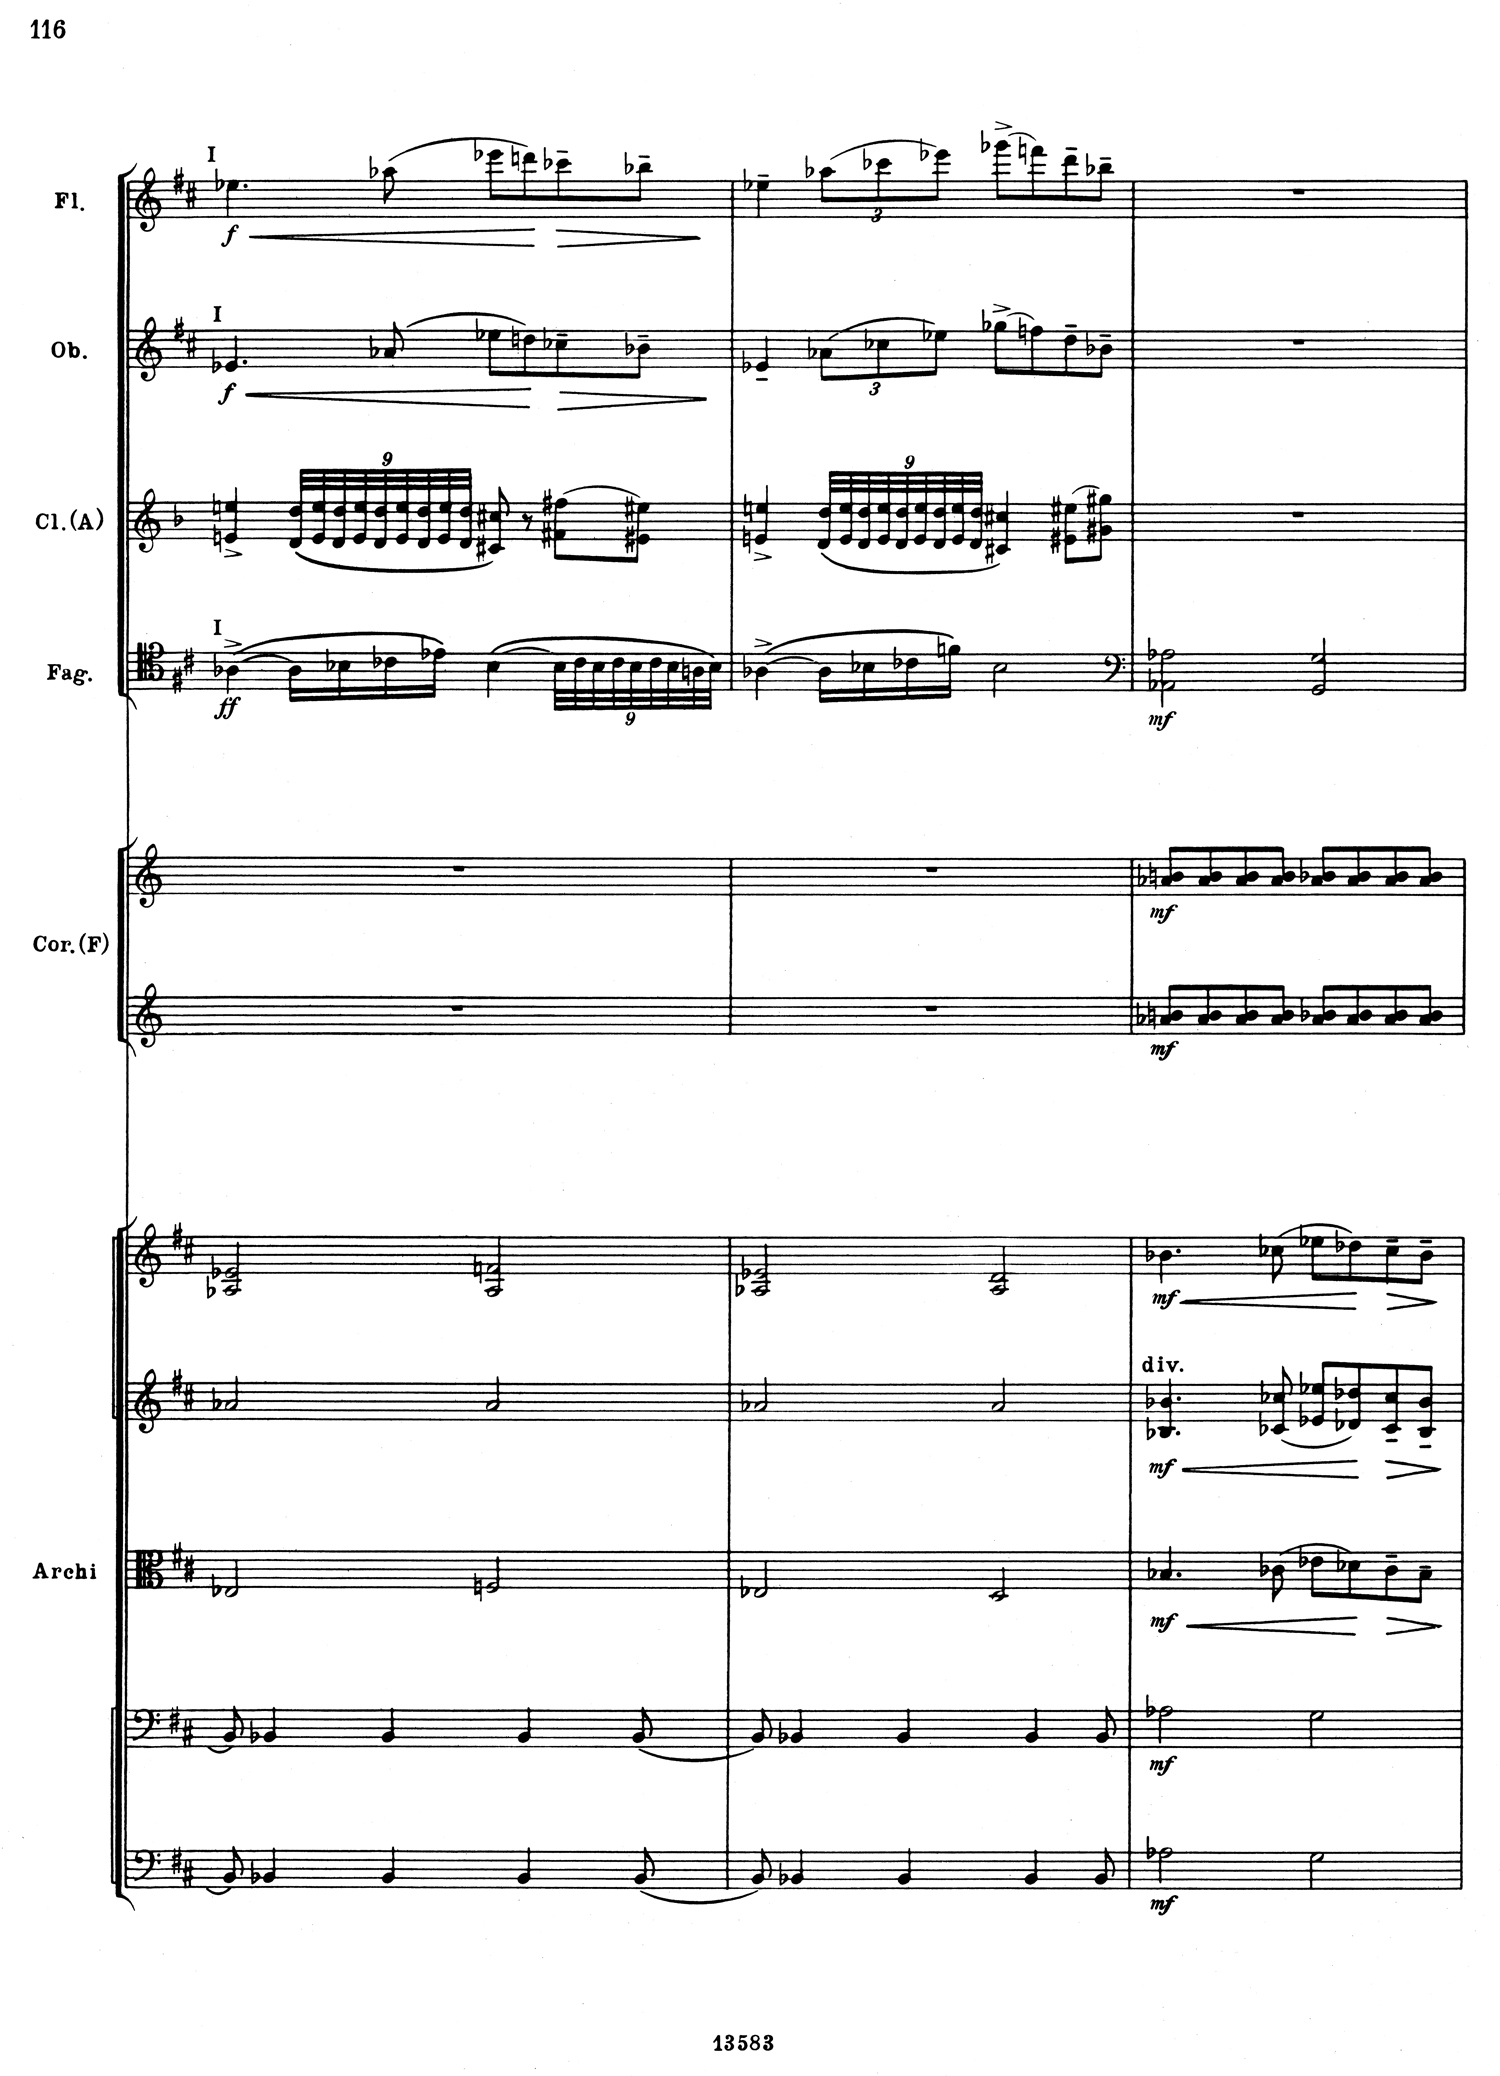 Tchaikovsky 5 Mvt 2 Score 4.jpg